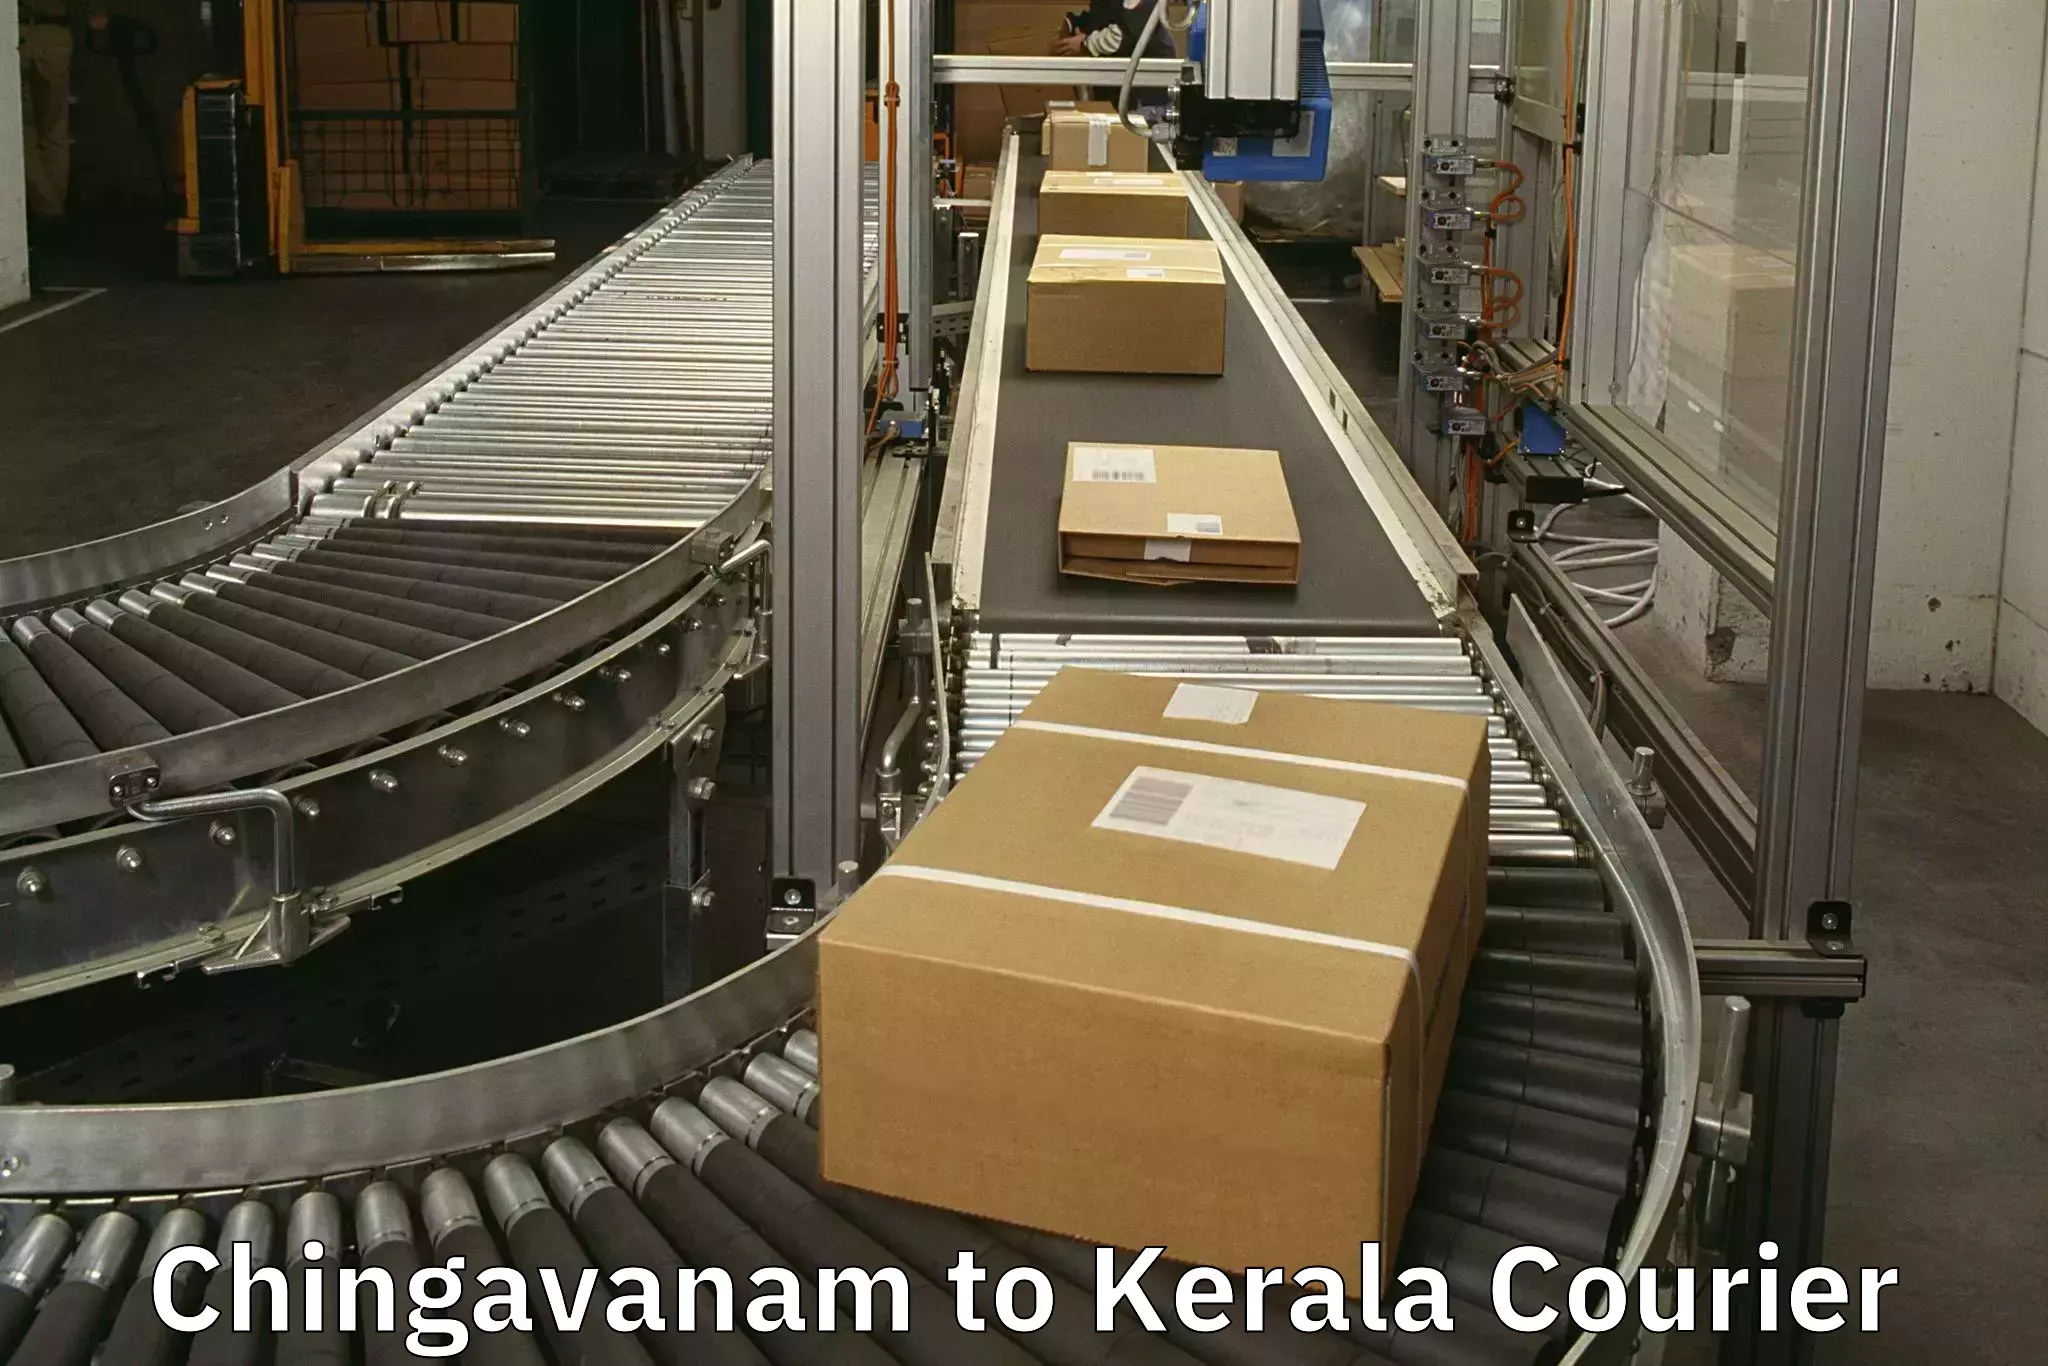 Baggage transport scheduler Chingavanam to Kerala